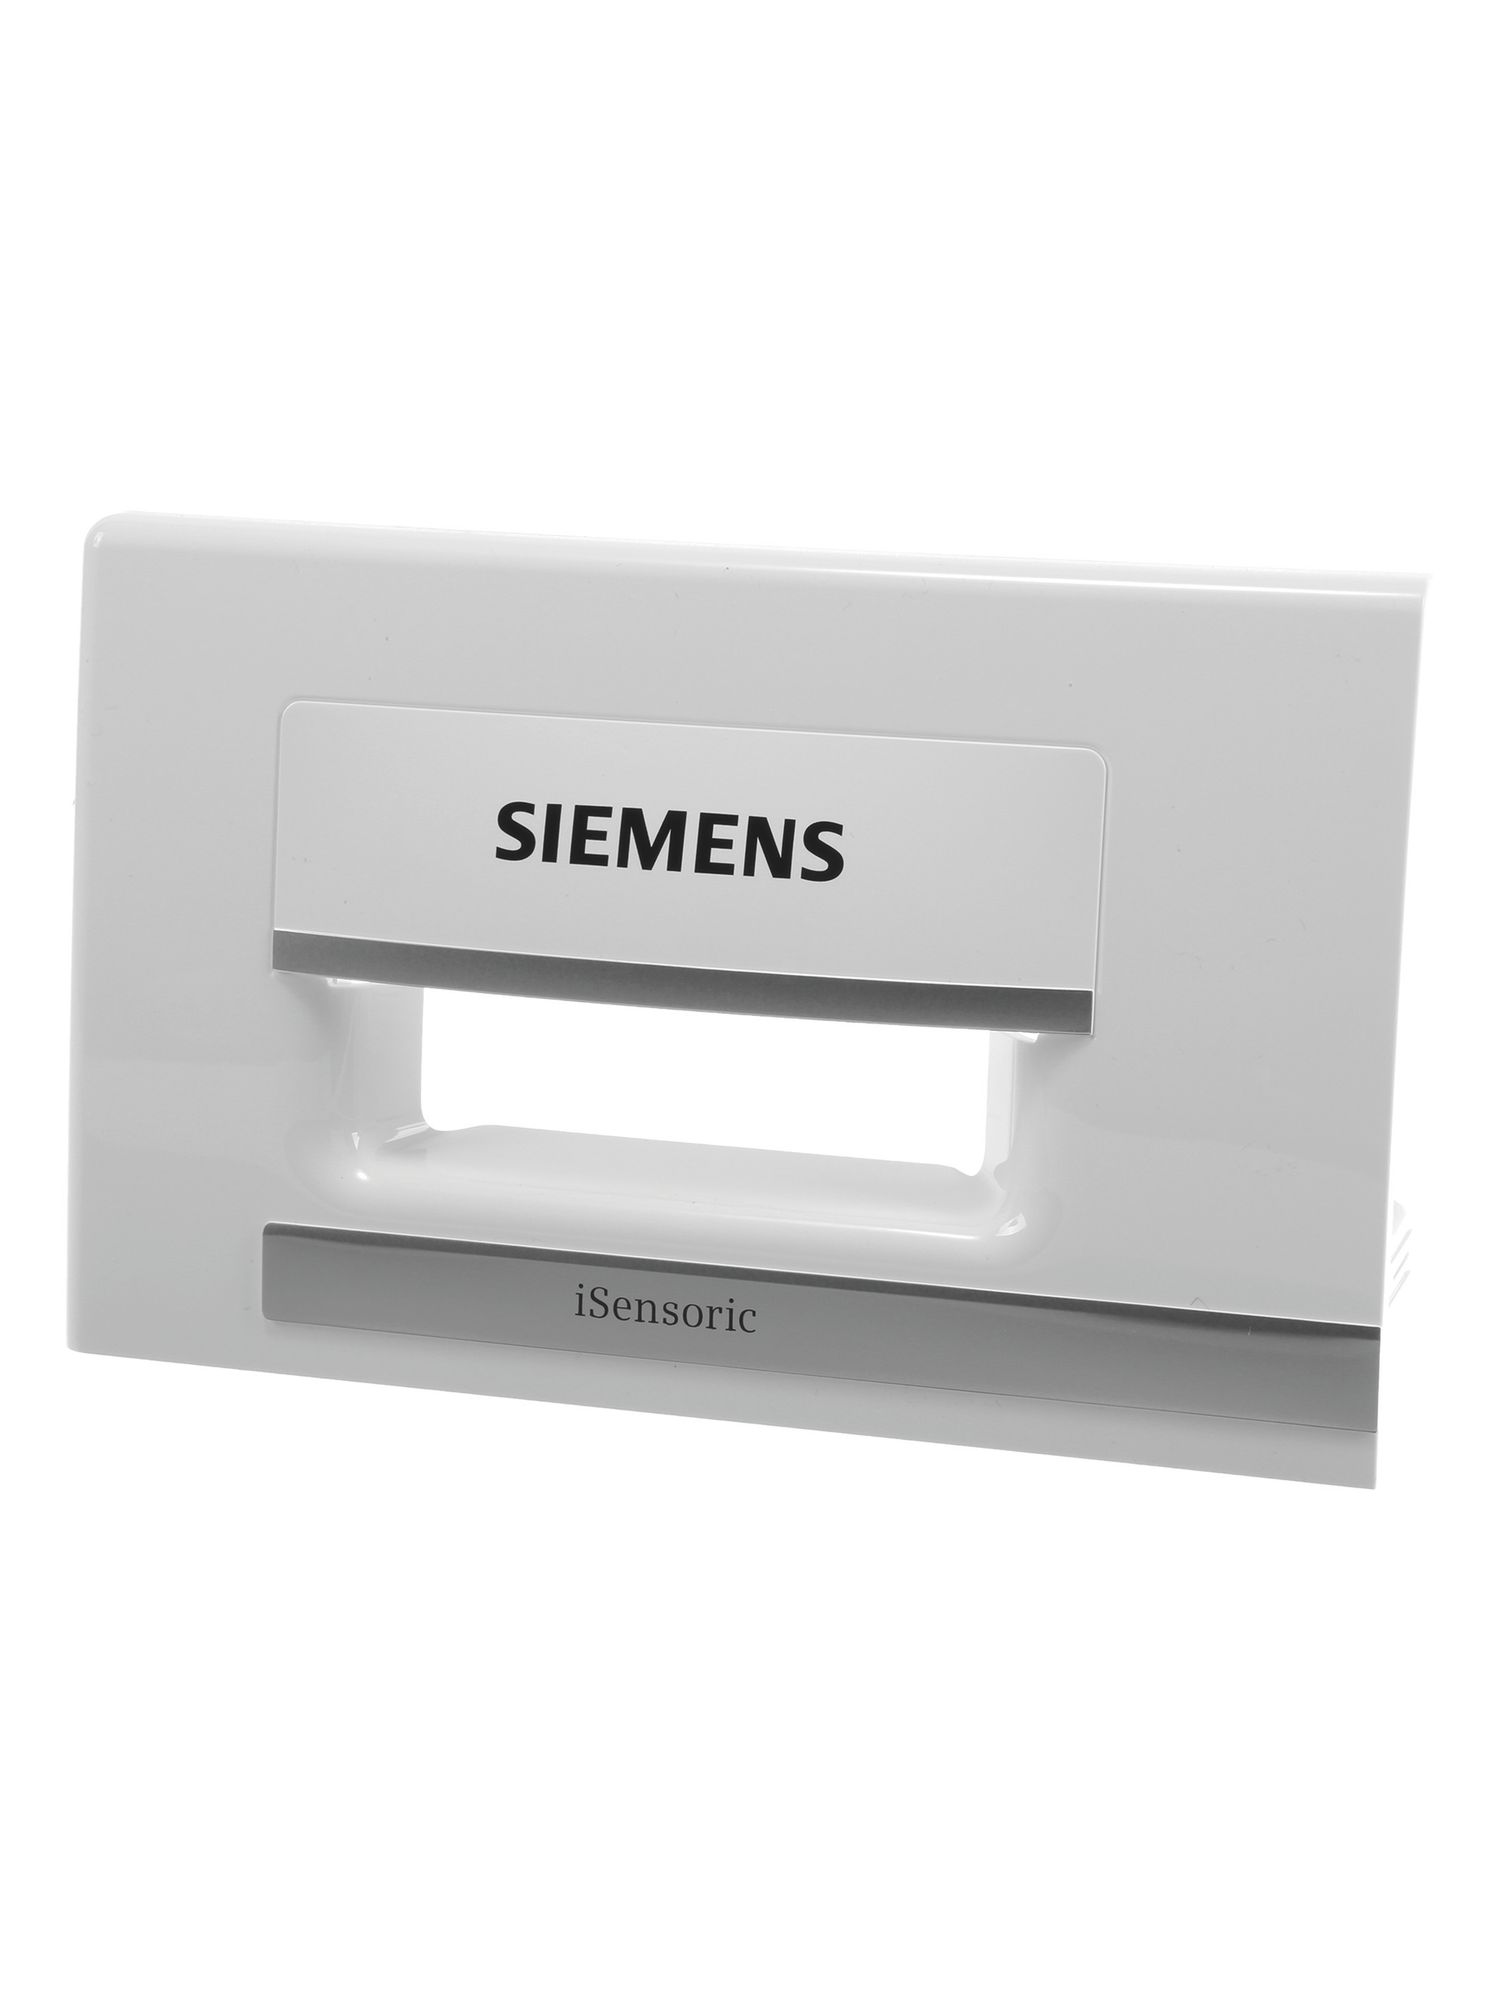 Schalengriff Siemens F23x weiss-velour-chrome heiss geprgt- schwarz (BD-12012084)